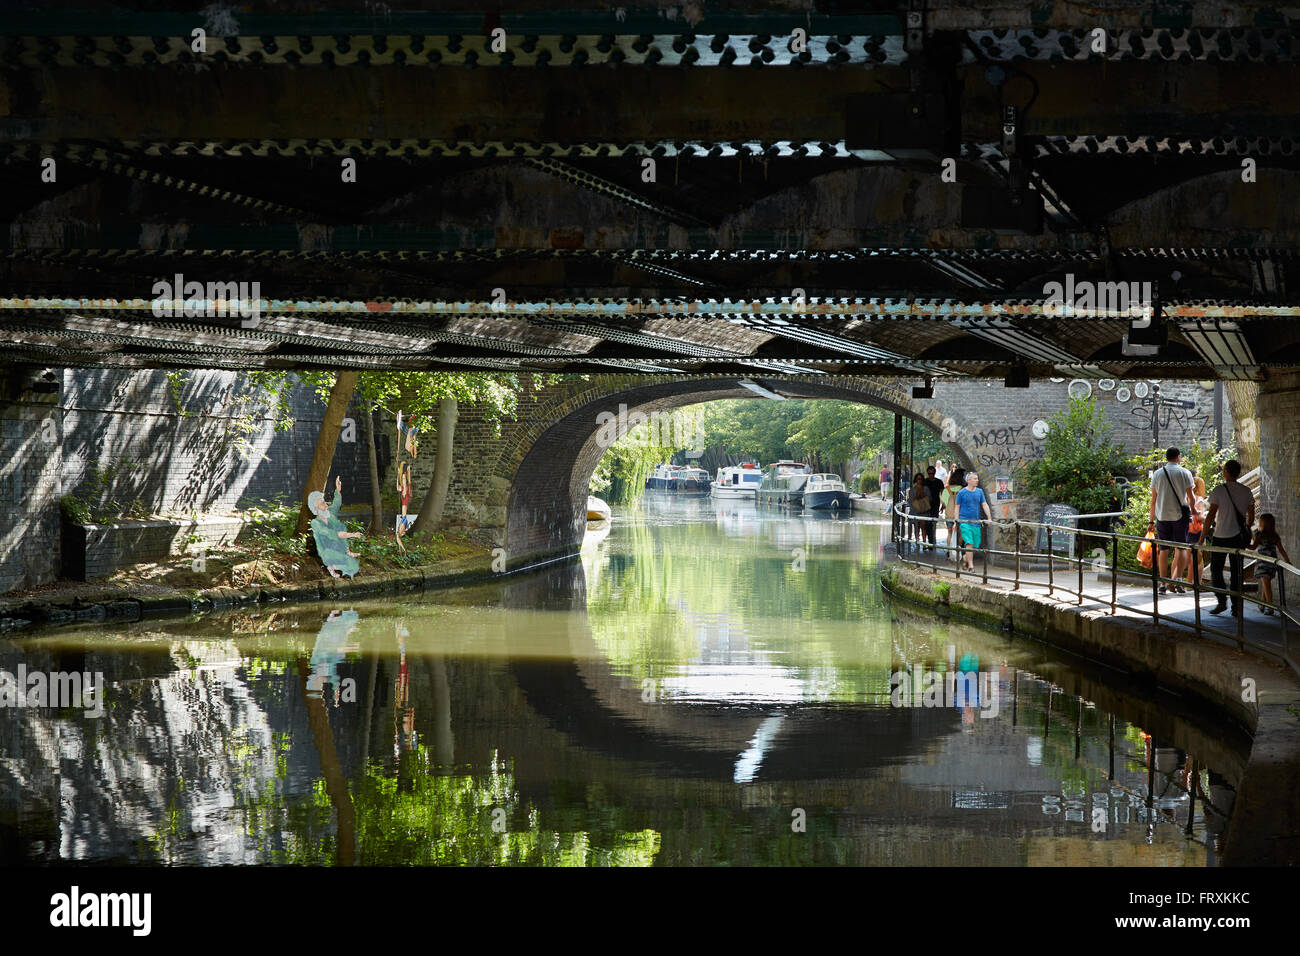 La petite Venise canal dans une journée d'été, sous le pont à Londres Banque D'Images